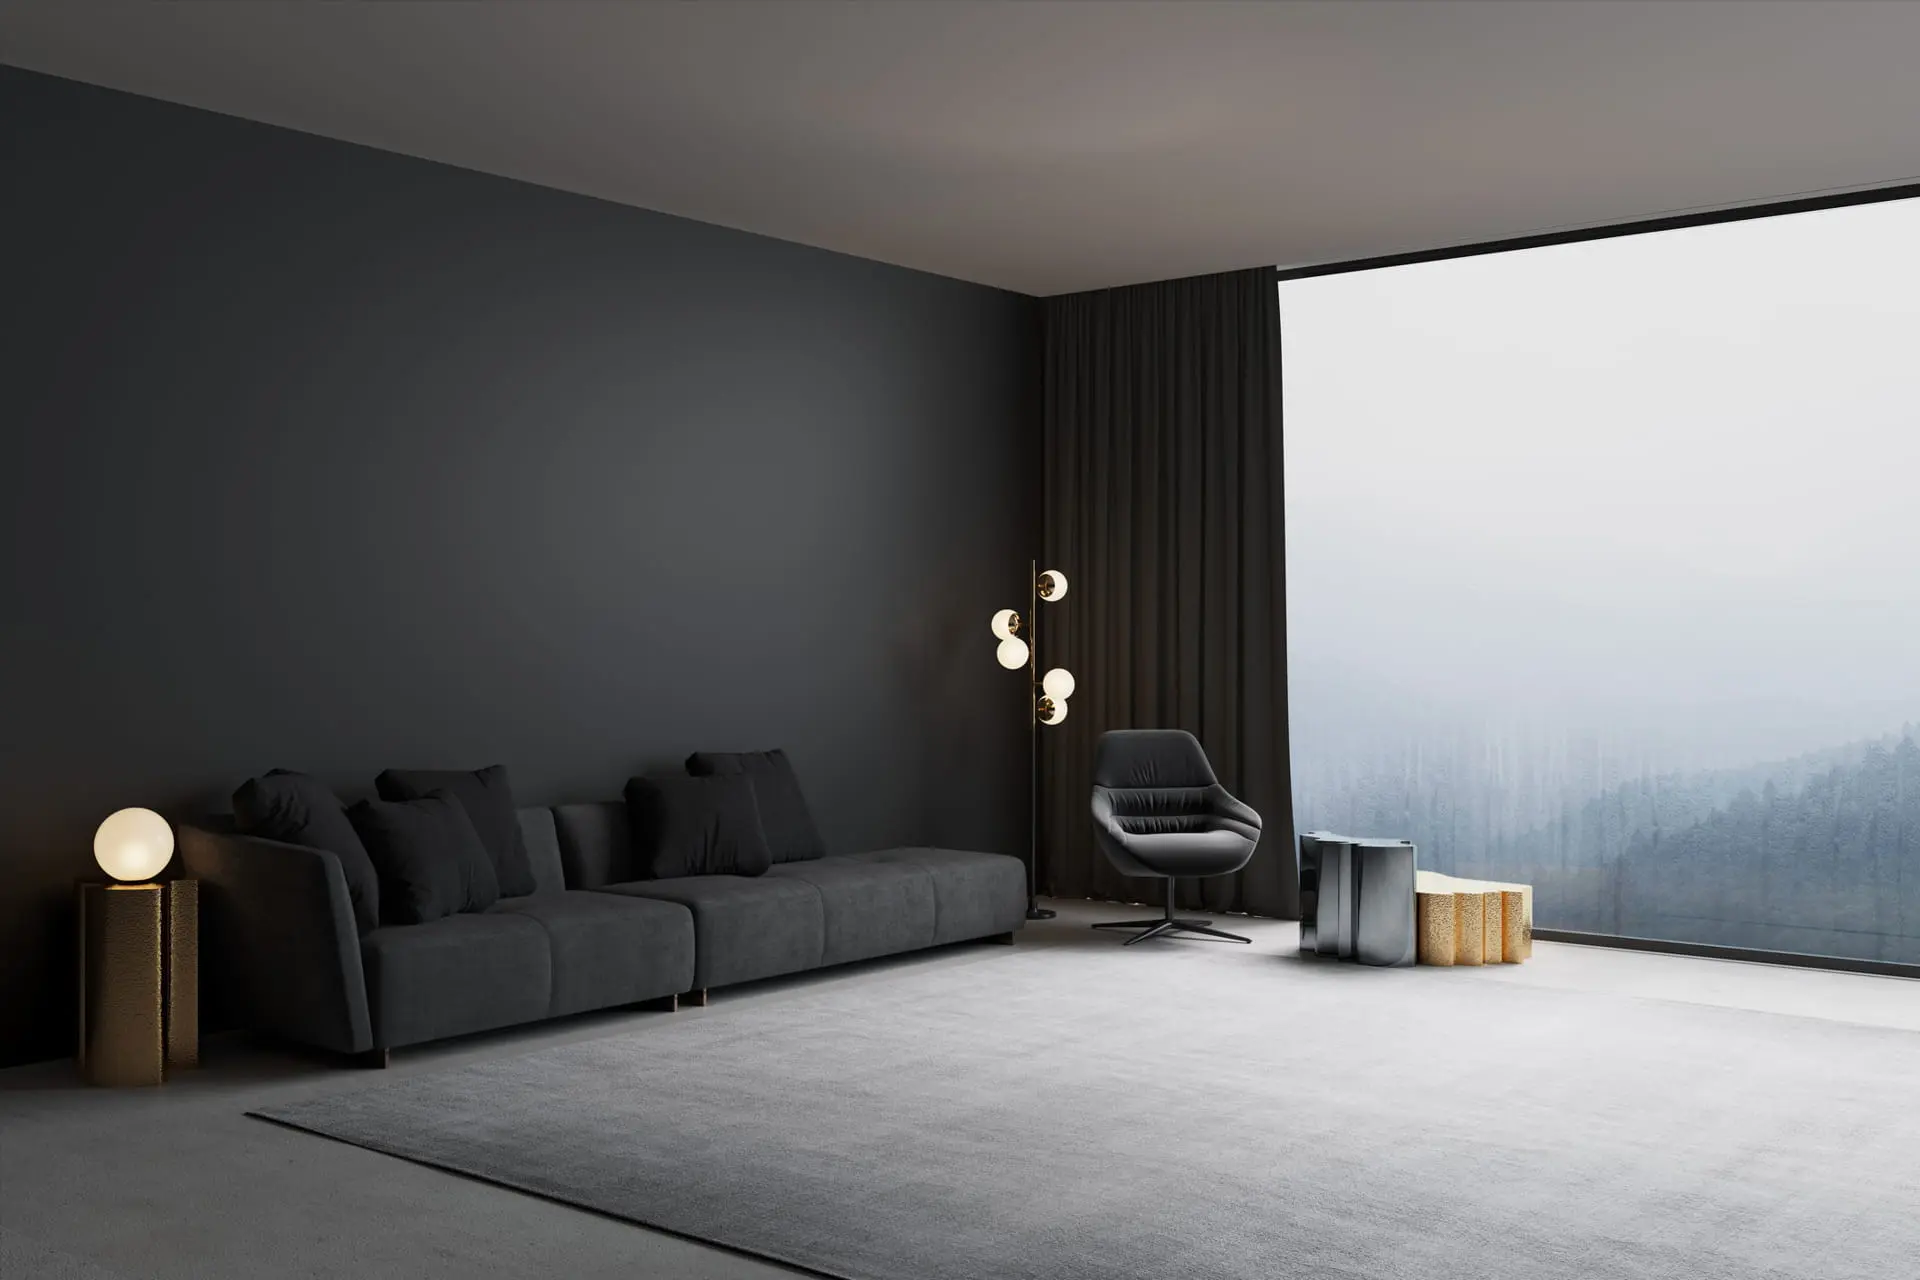 Salón moderno decorado con microcemento en color oscuro